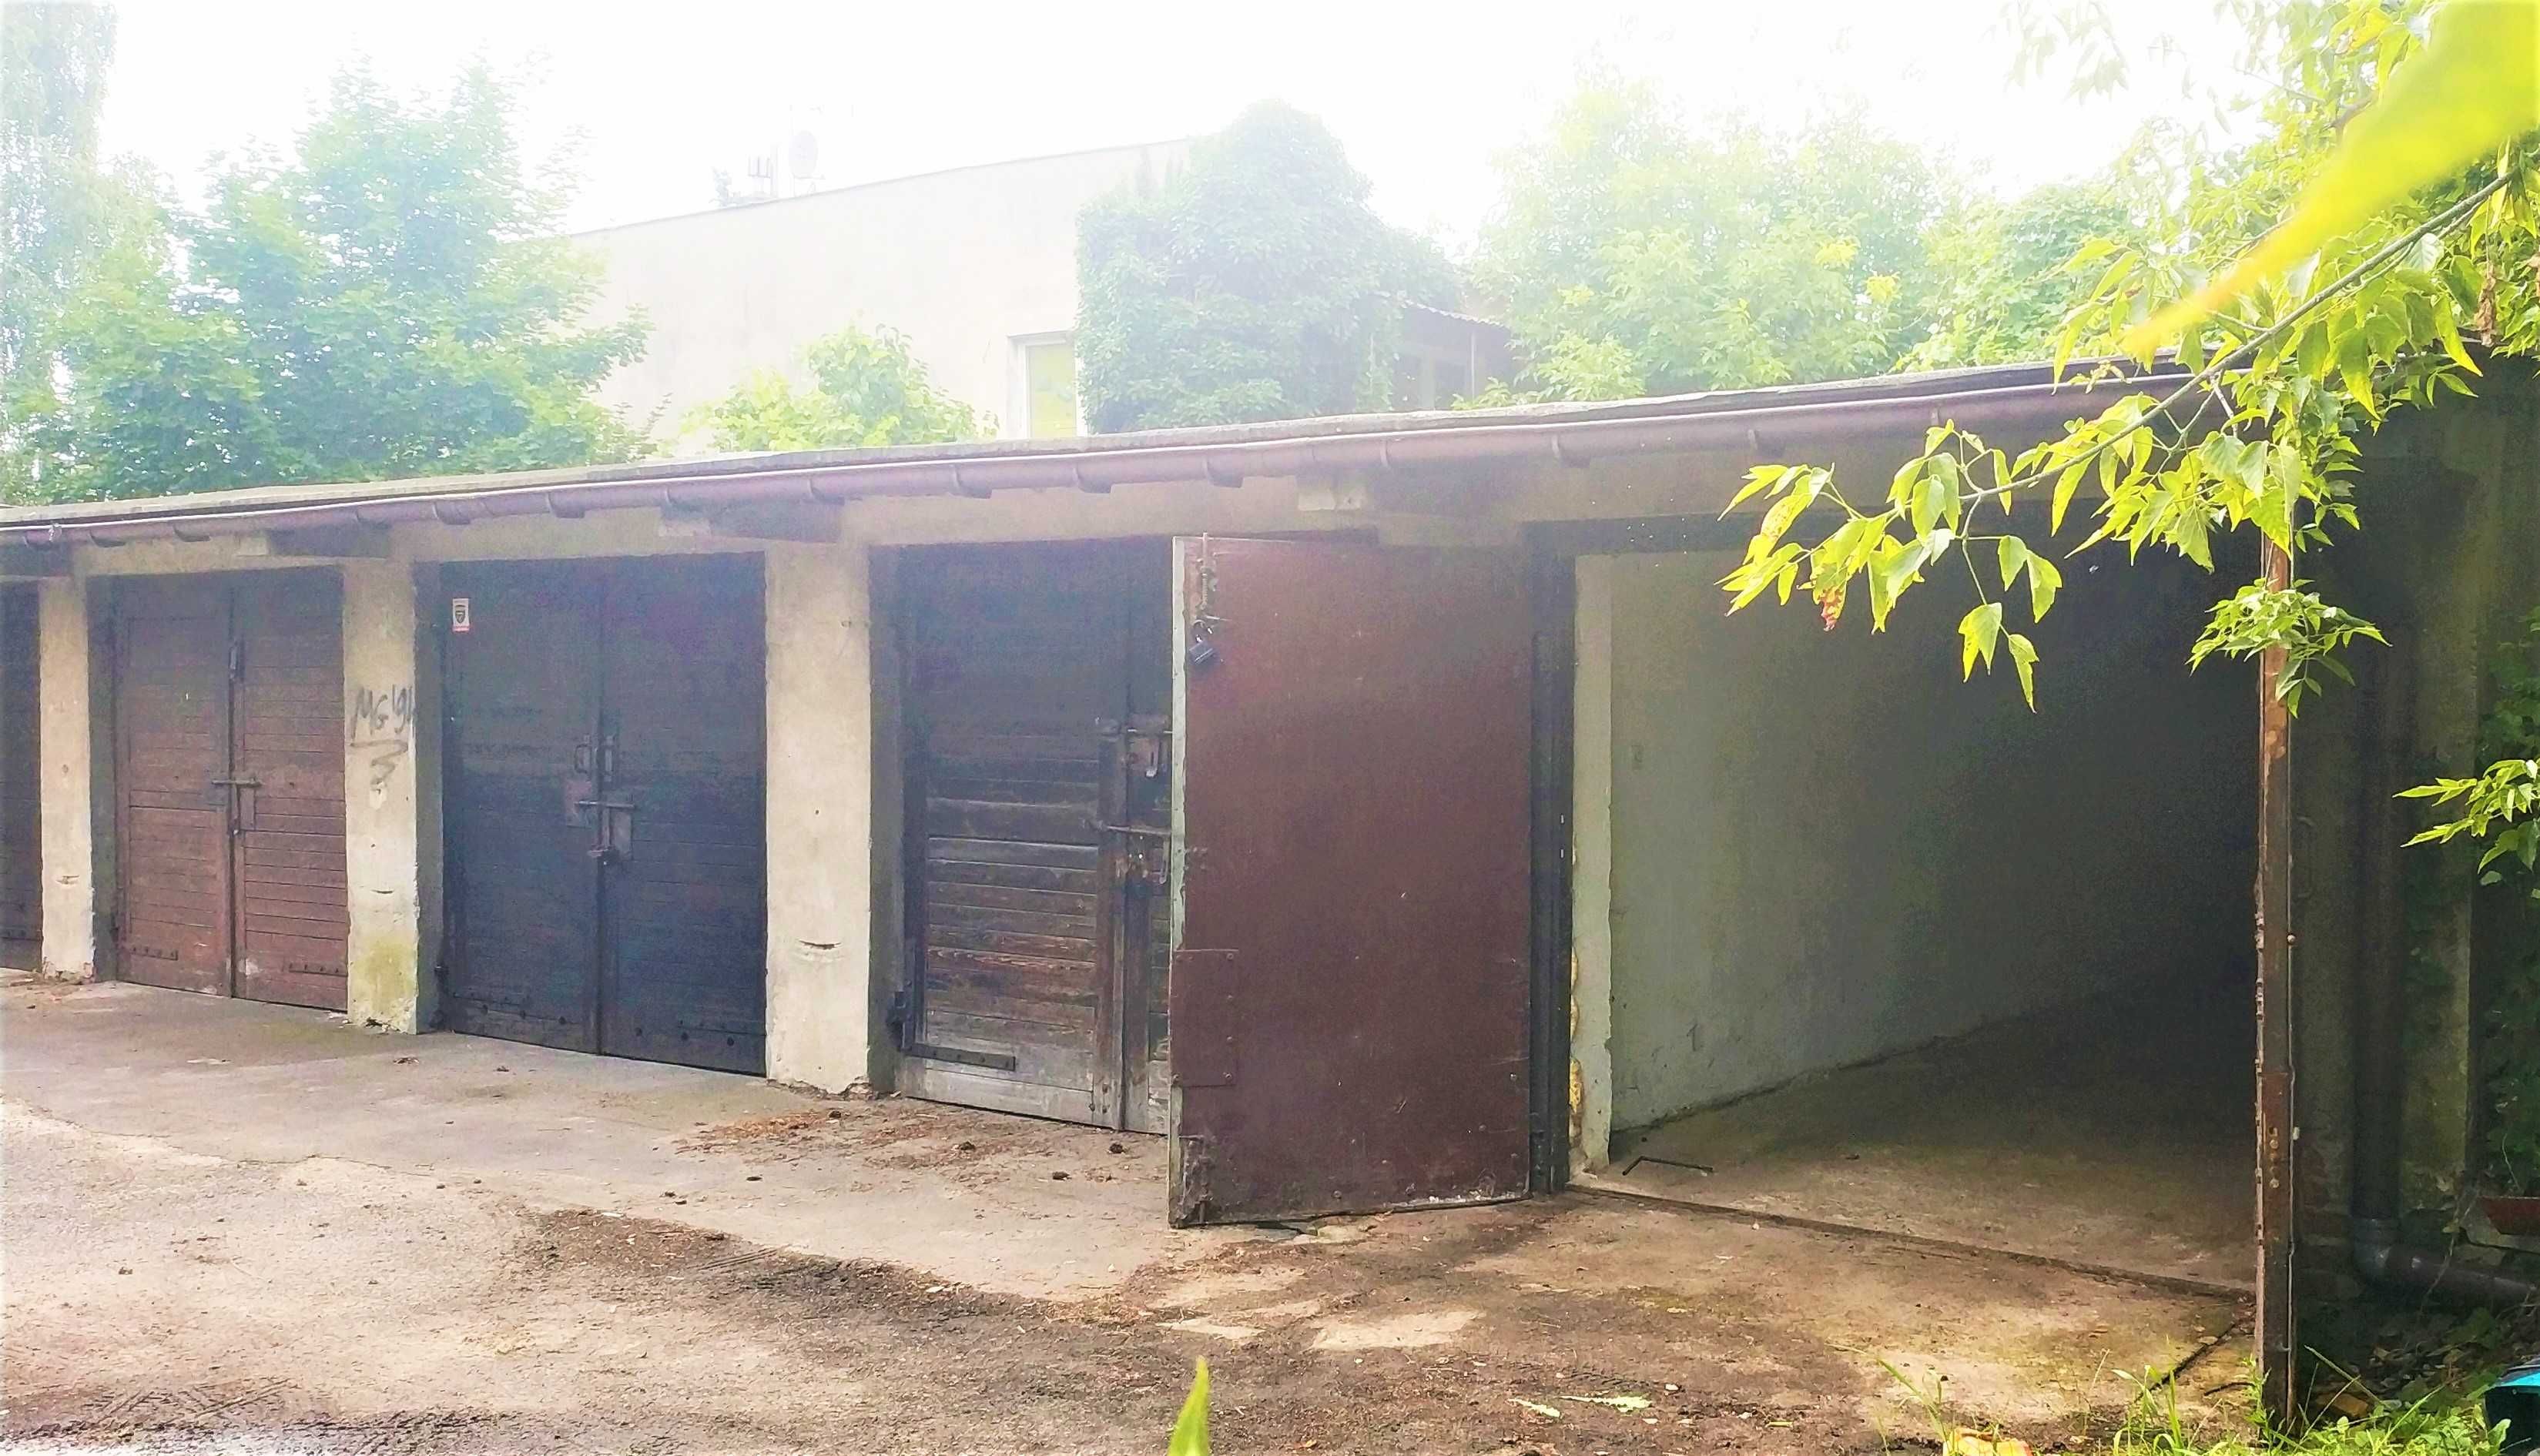 Samodzielny garaż szer. 2,70, dł. 8,40 m na Zaciszu ul. Gilarska 127a